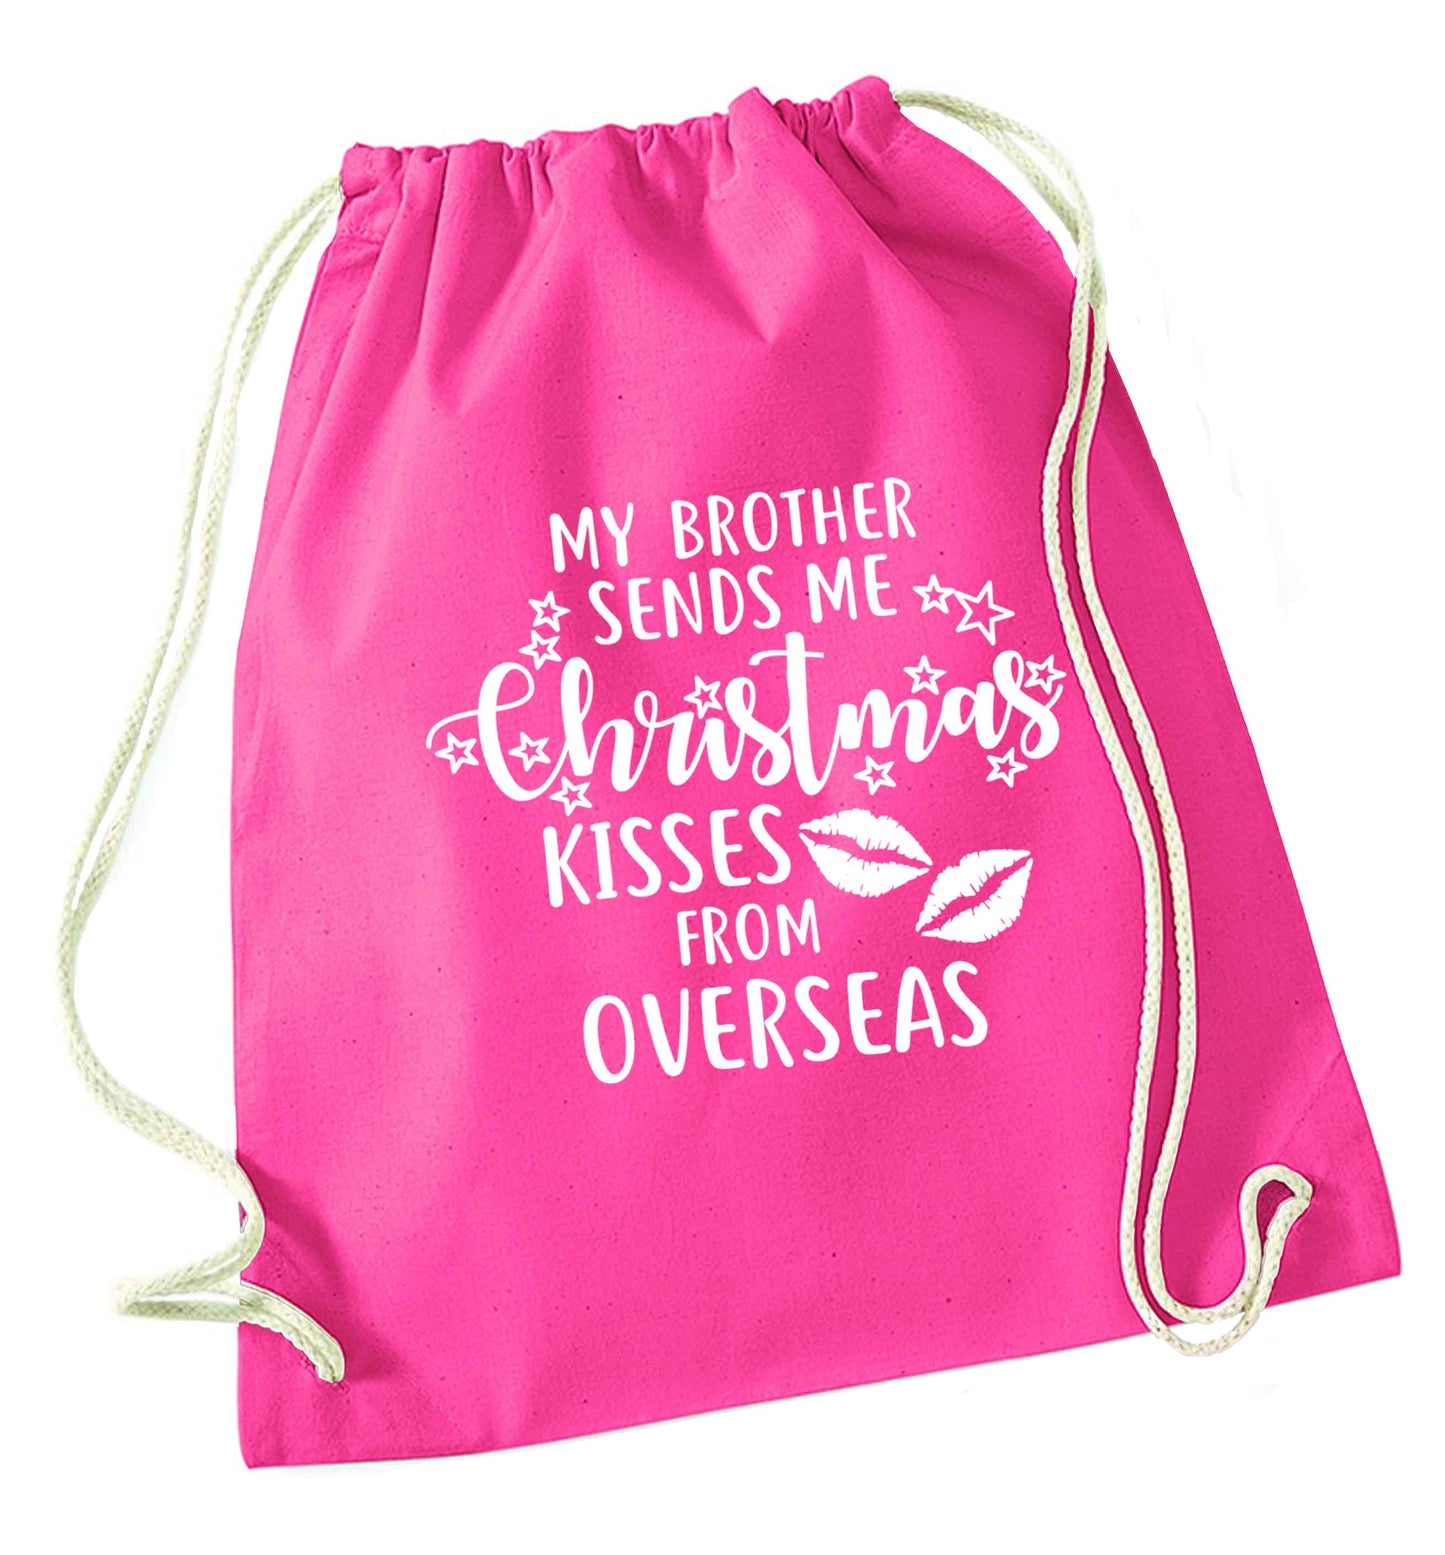 Brother Christmas Kisses Overseas pink drawstring bag